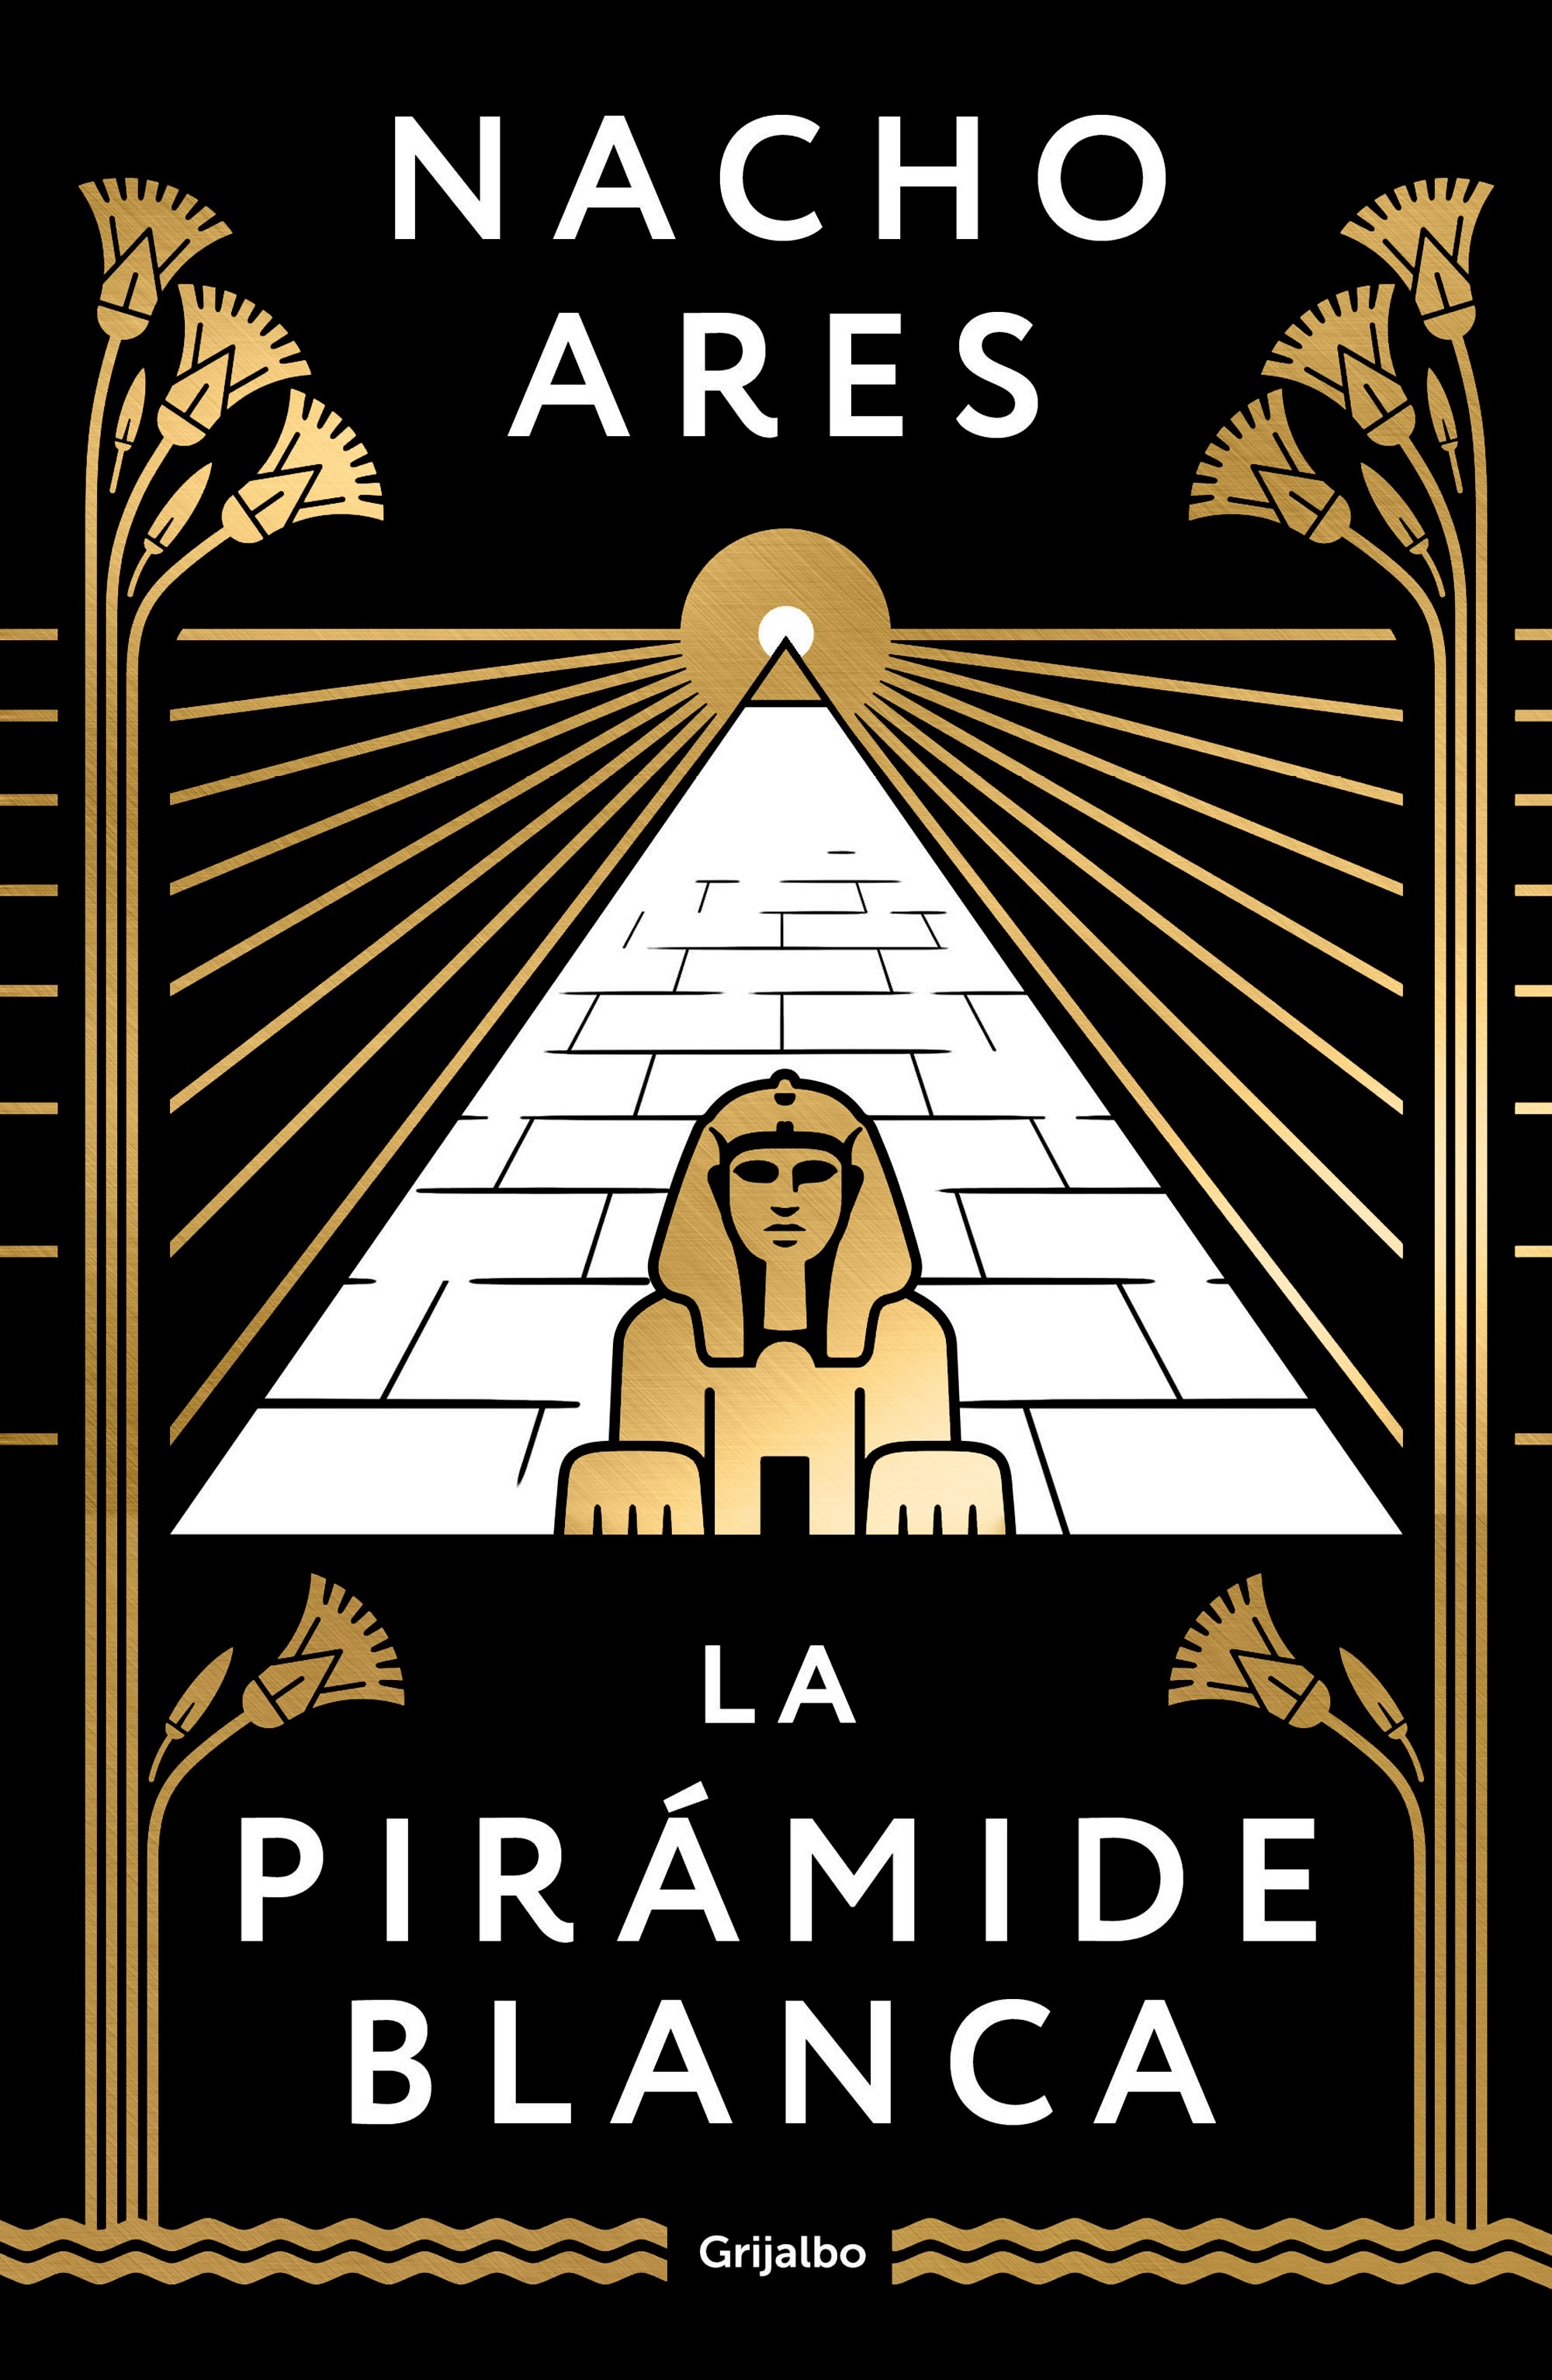 Pirámide blanca, La. 